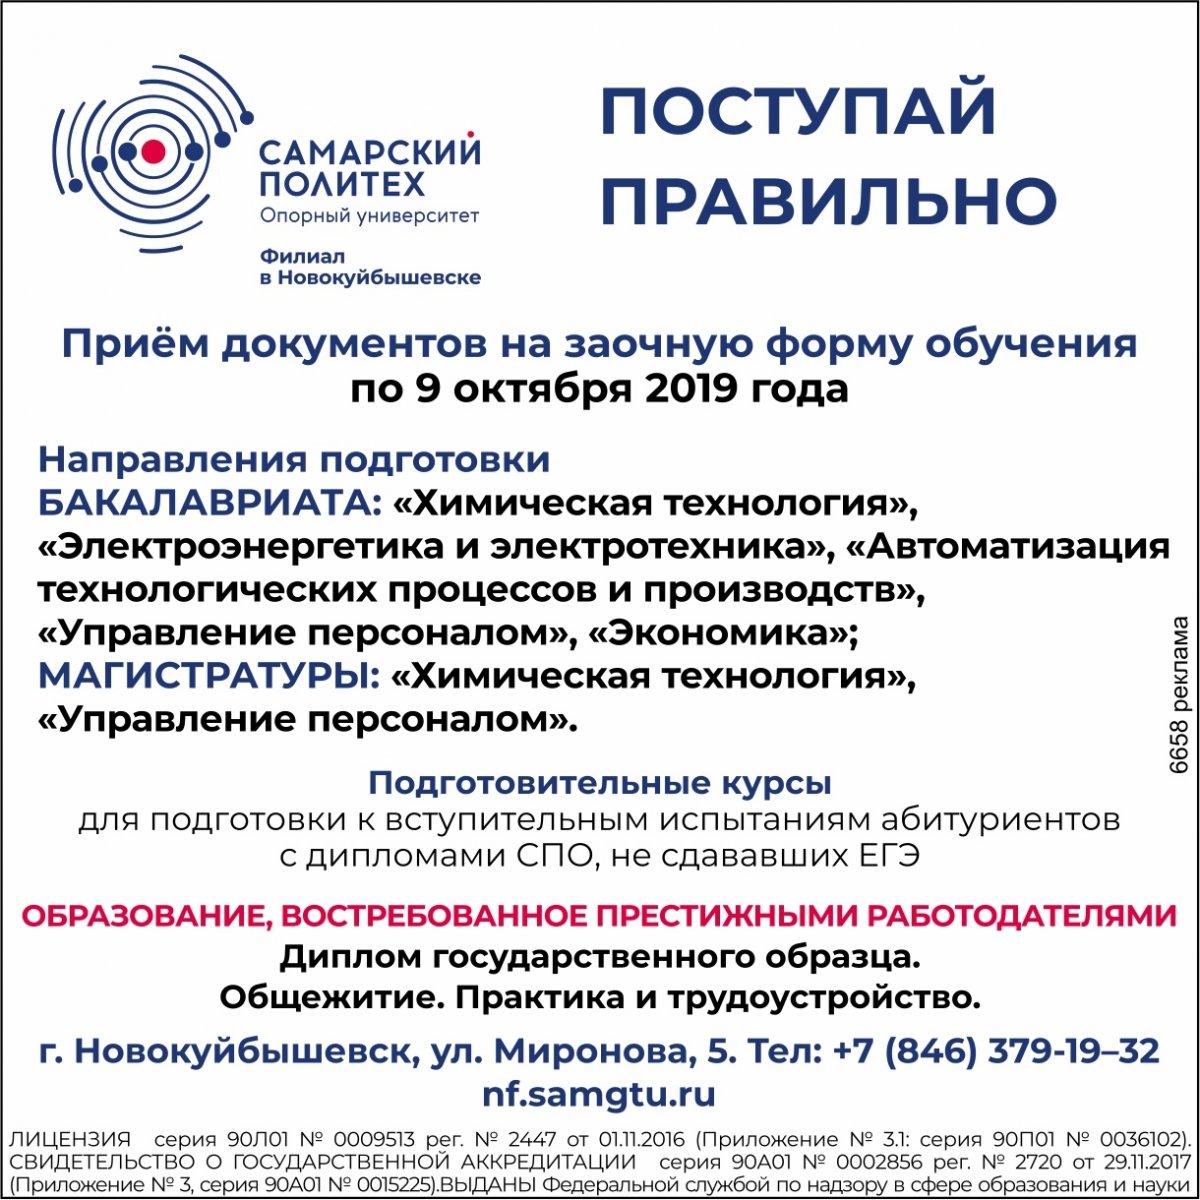 4 сентября в 18.00 состоится организационная встреча магистрантов очной формы обучения Новокуйбышевского филиала СамГТУ